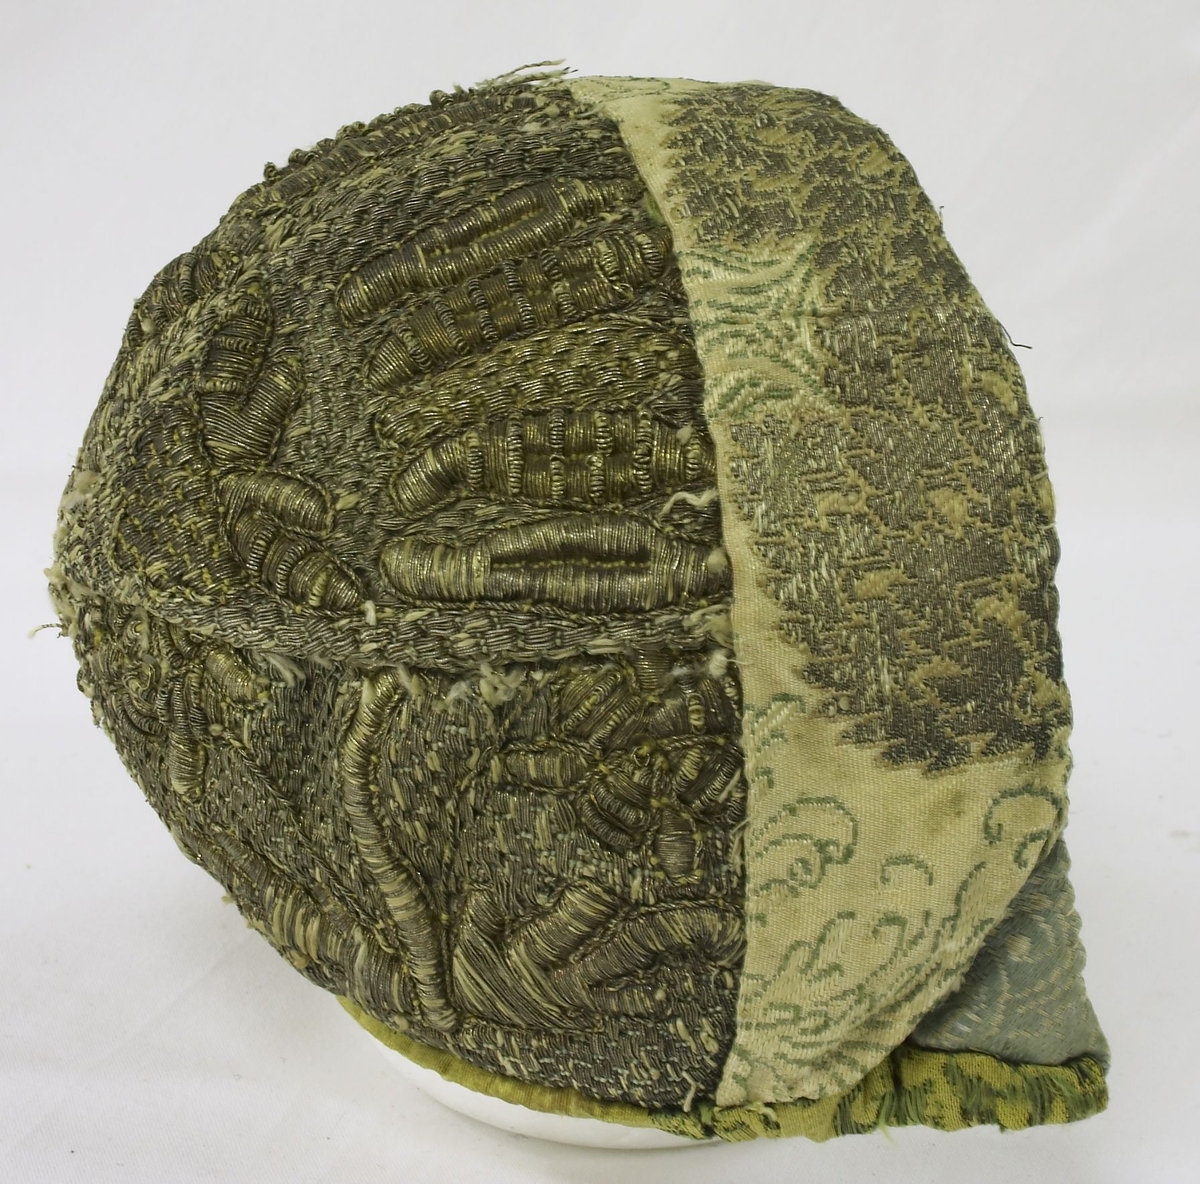 Barnelue / dåpslue. Hele lua er metallbrodert. Gul silkebrokade med mønster i grønt og svart. Fór i trykt bomull. Lua er vatert. Hele lua er sydd for hånd. Kan være fra 1700-tallet.